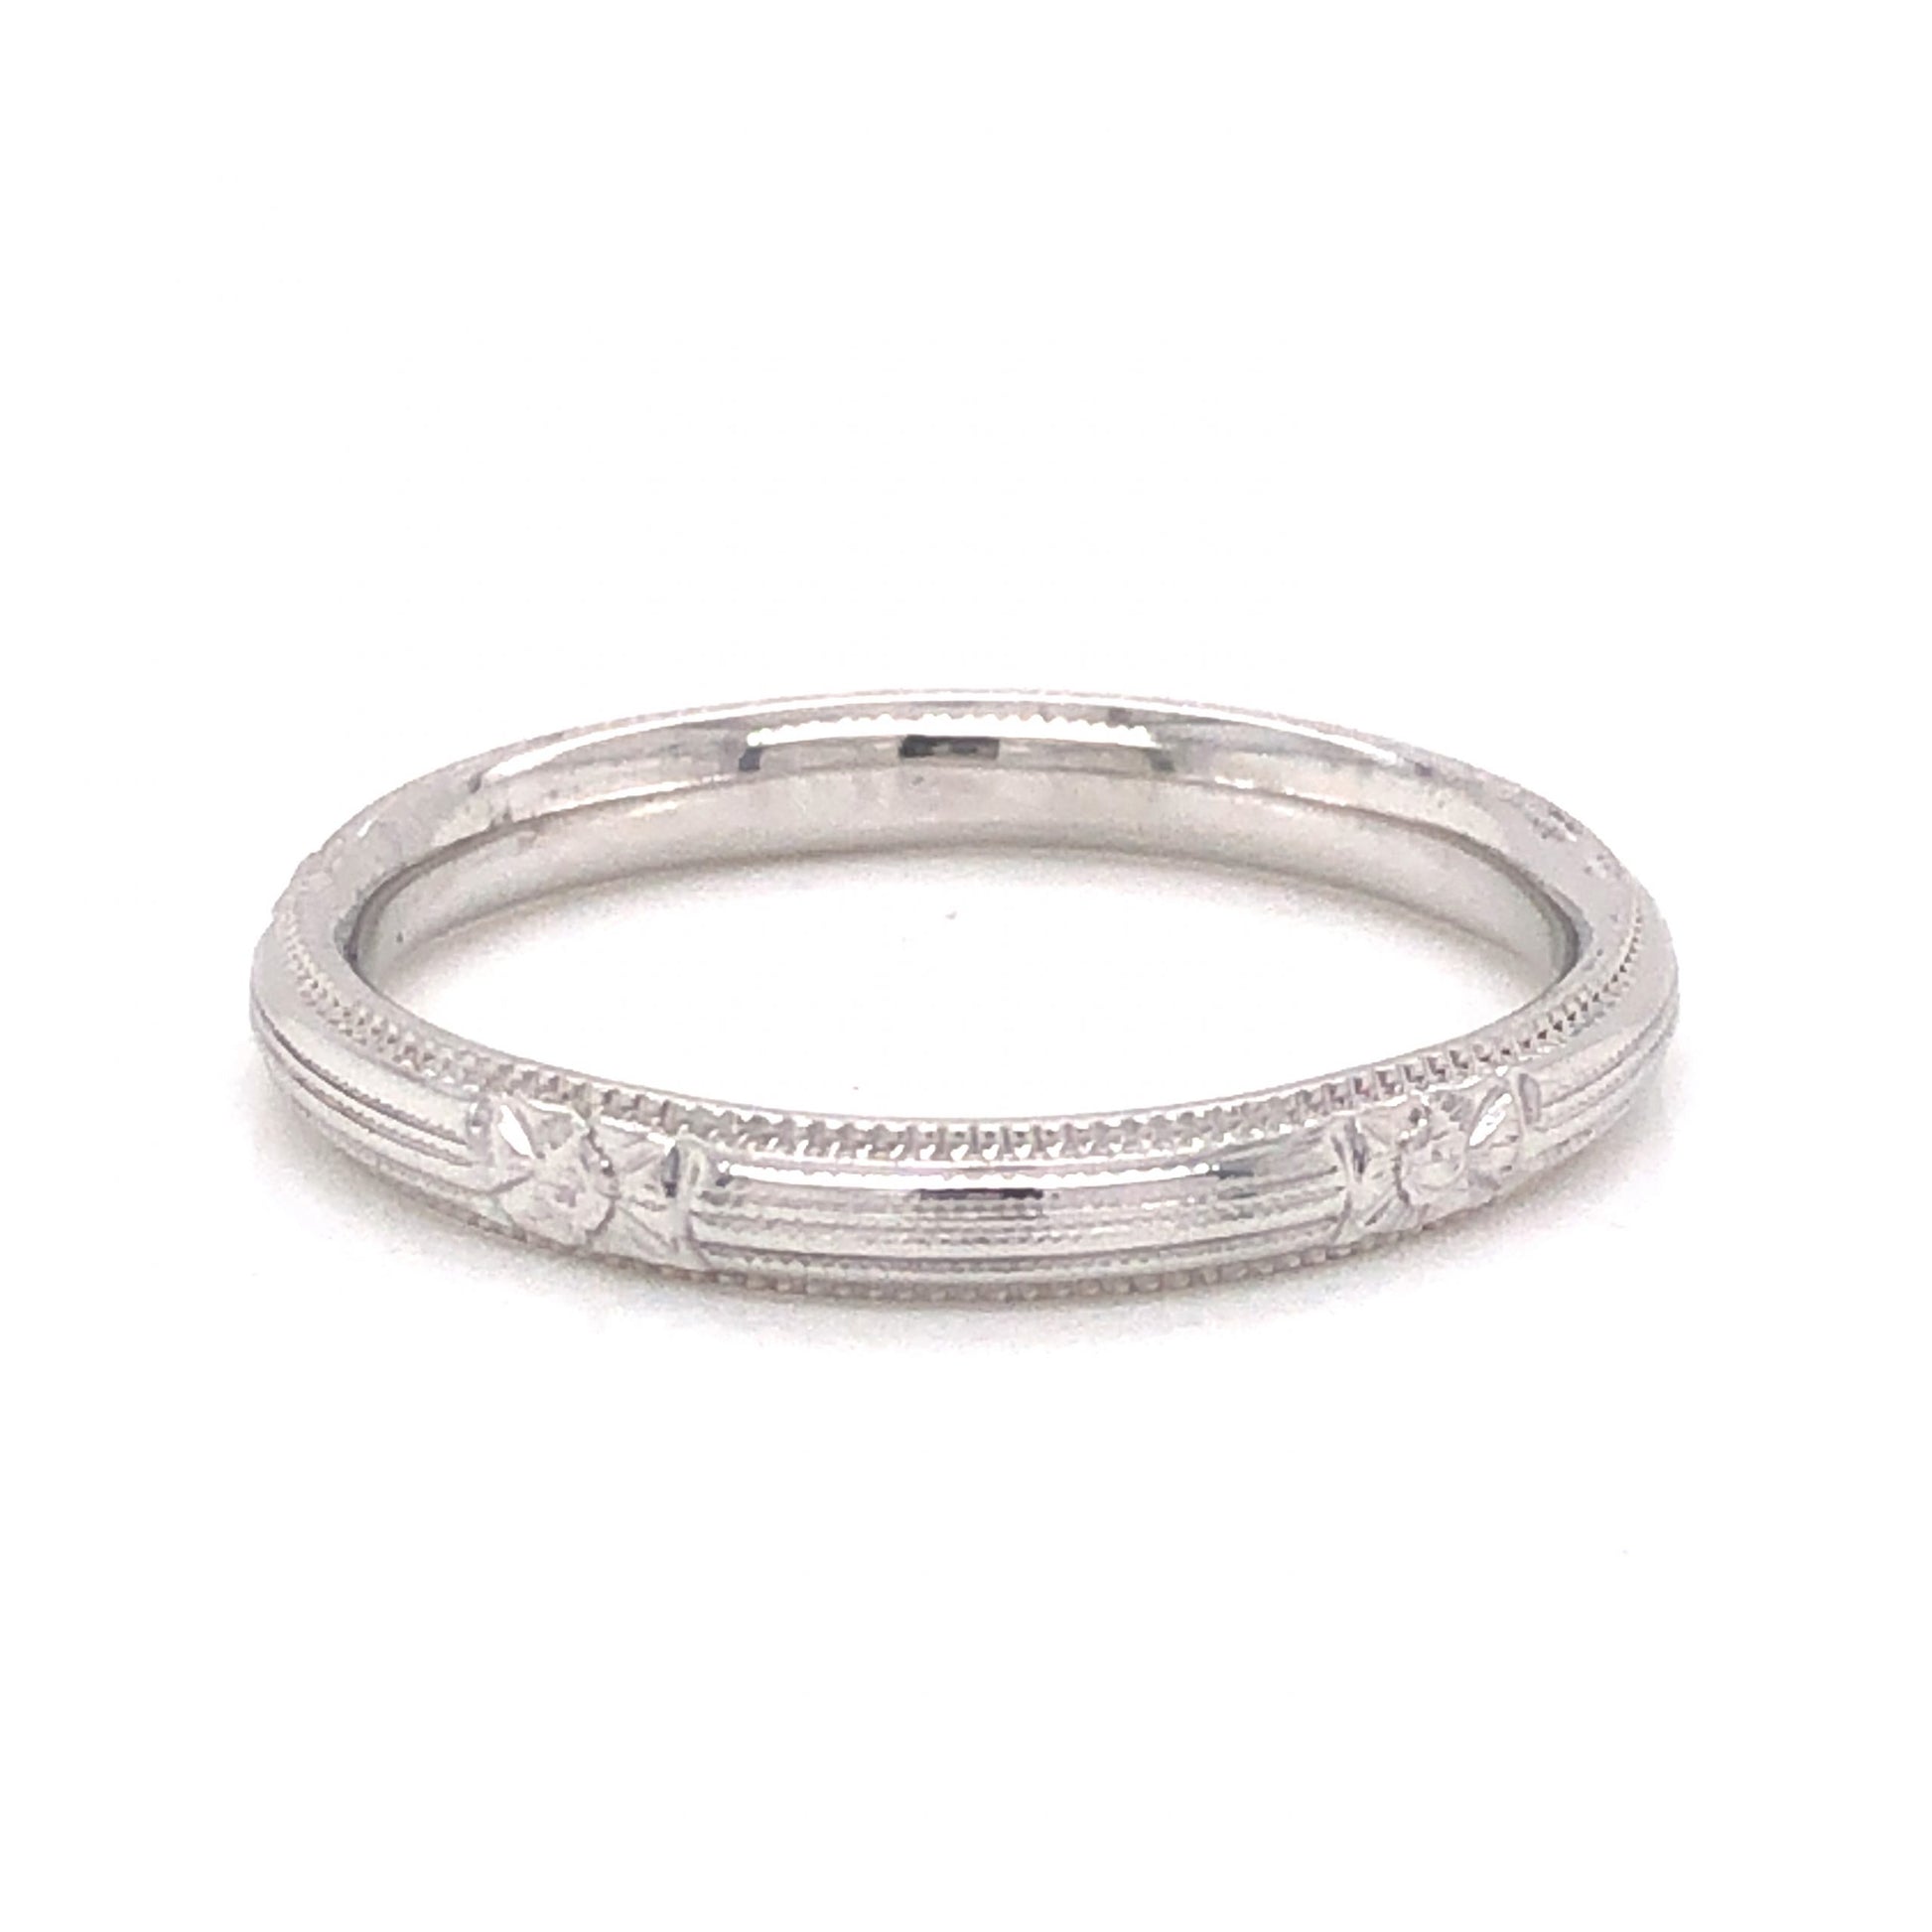 Engraved Milgrain Art Deco Wedding Band in 18k White GoldComposition: Platinum Ring Size: 7 Total Gram Weight: 2.8 g Inscription: 18K-B
      